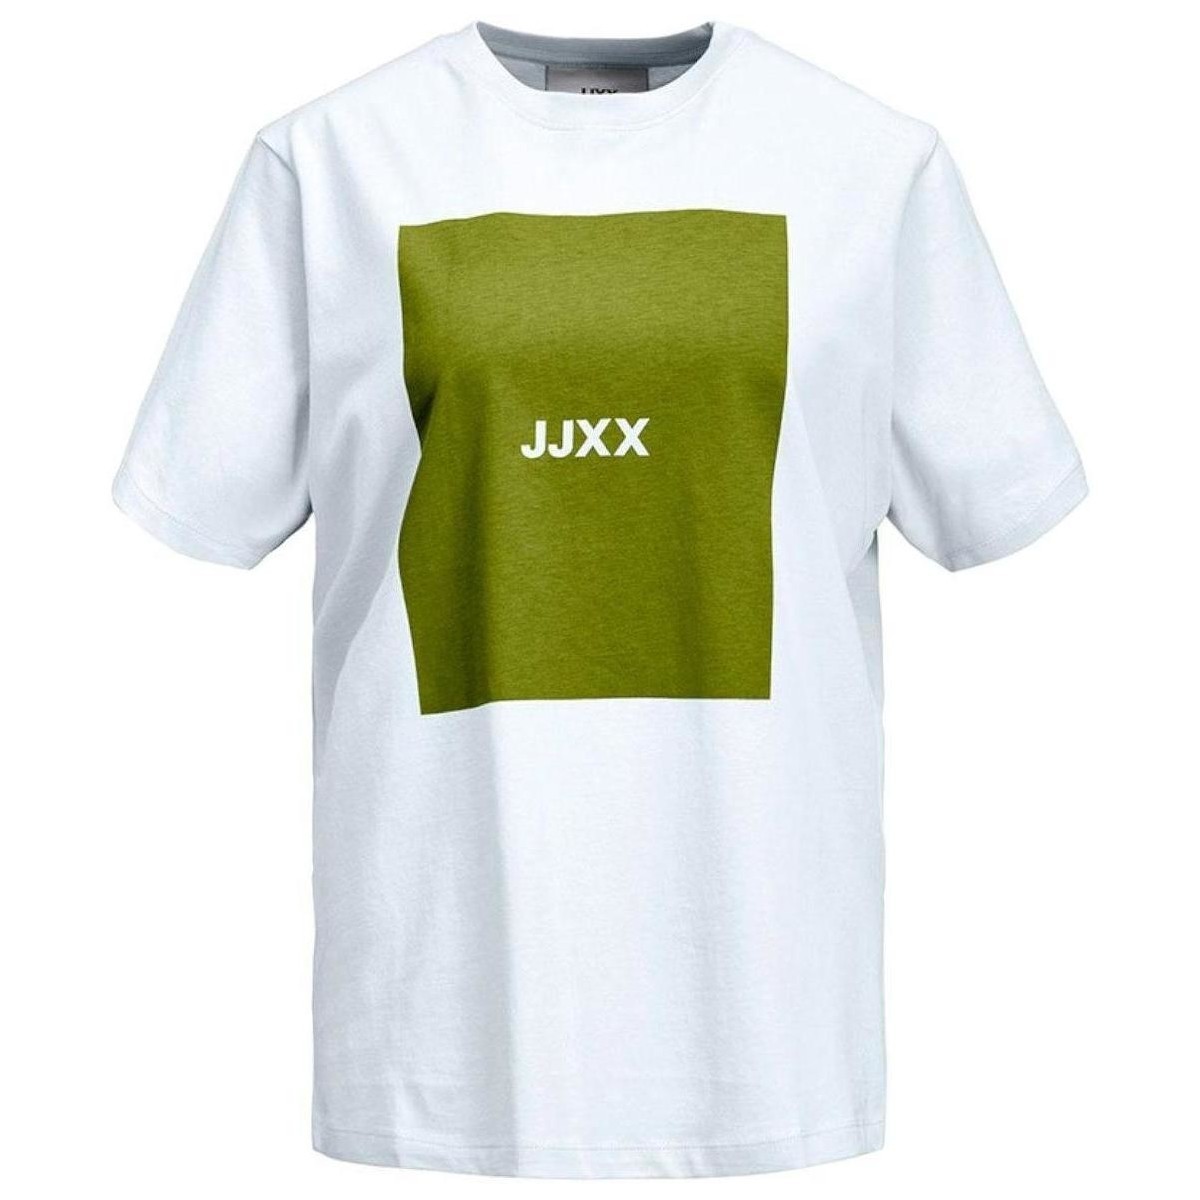 Jjxx  -  Bílá